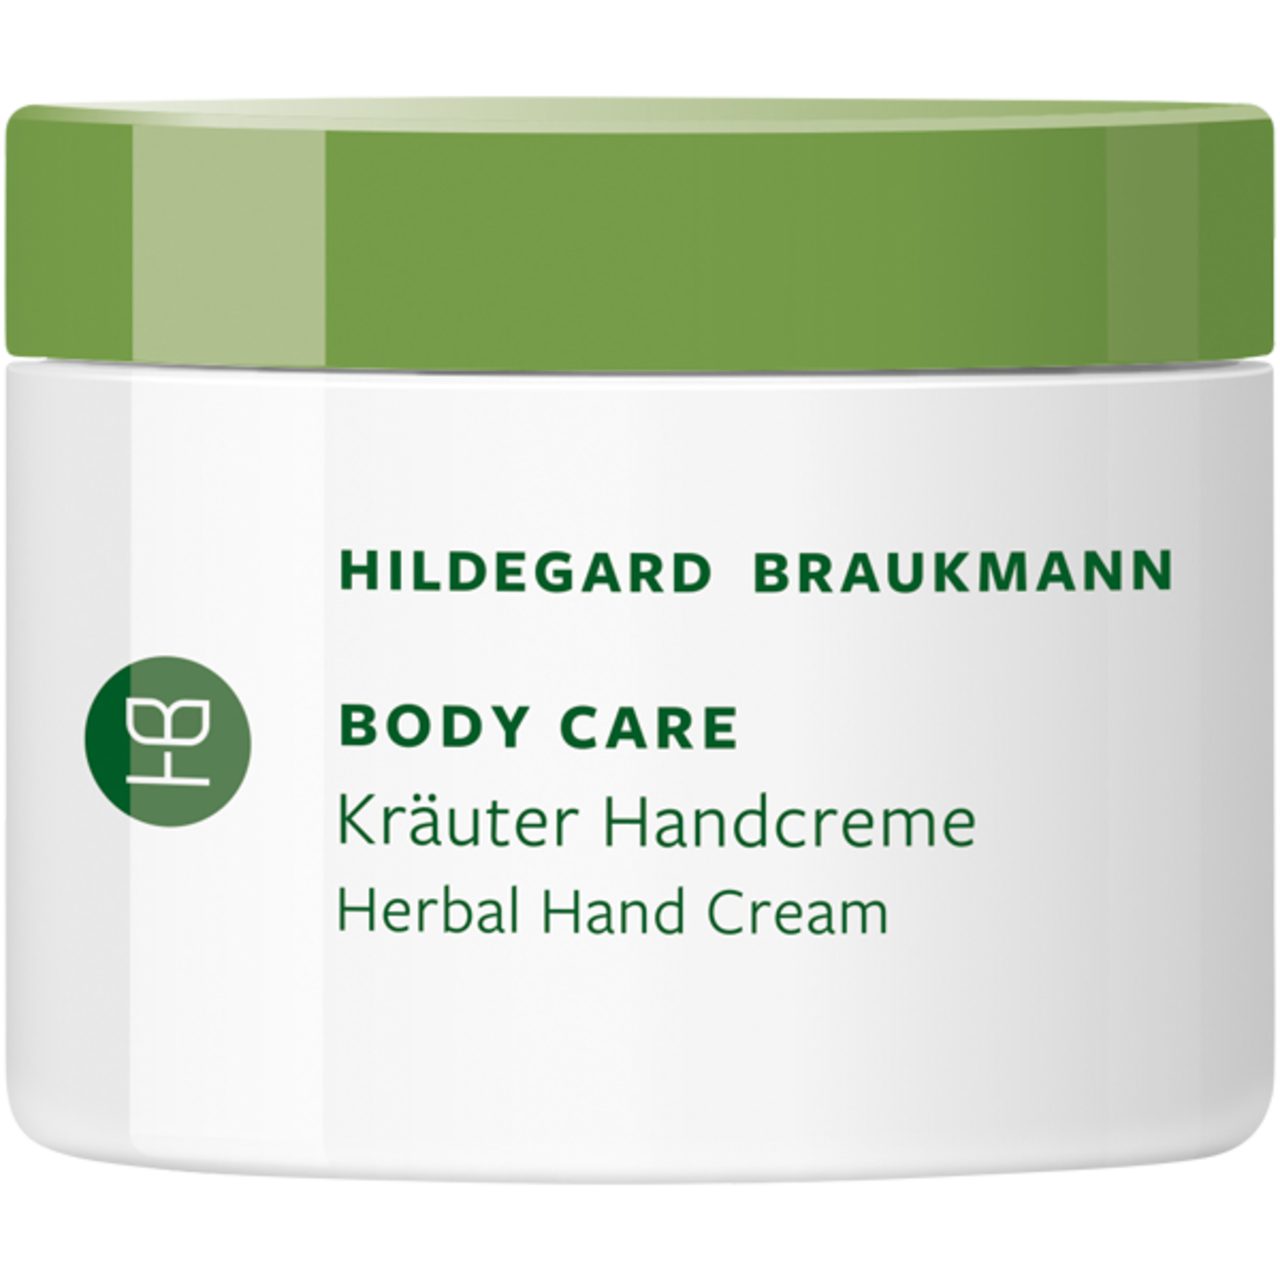 Hildegard Braukmann Handcreme Body Care Kräuter Handcreme